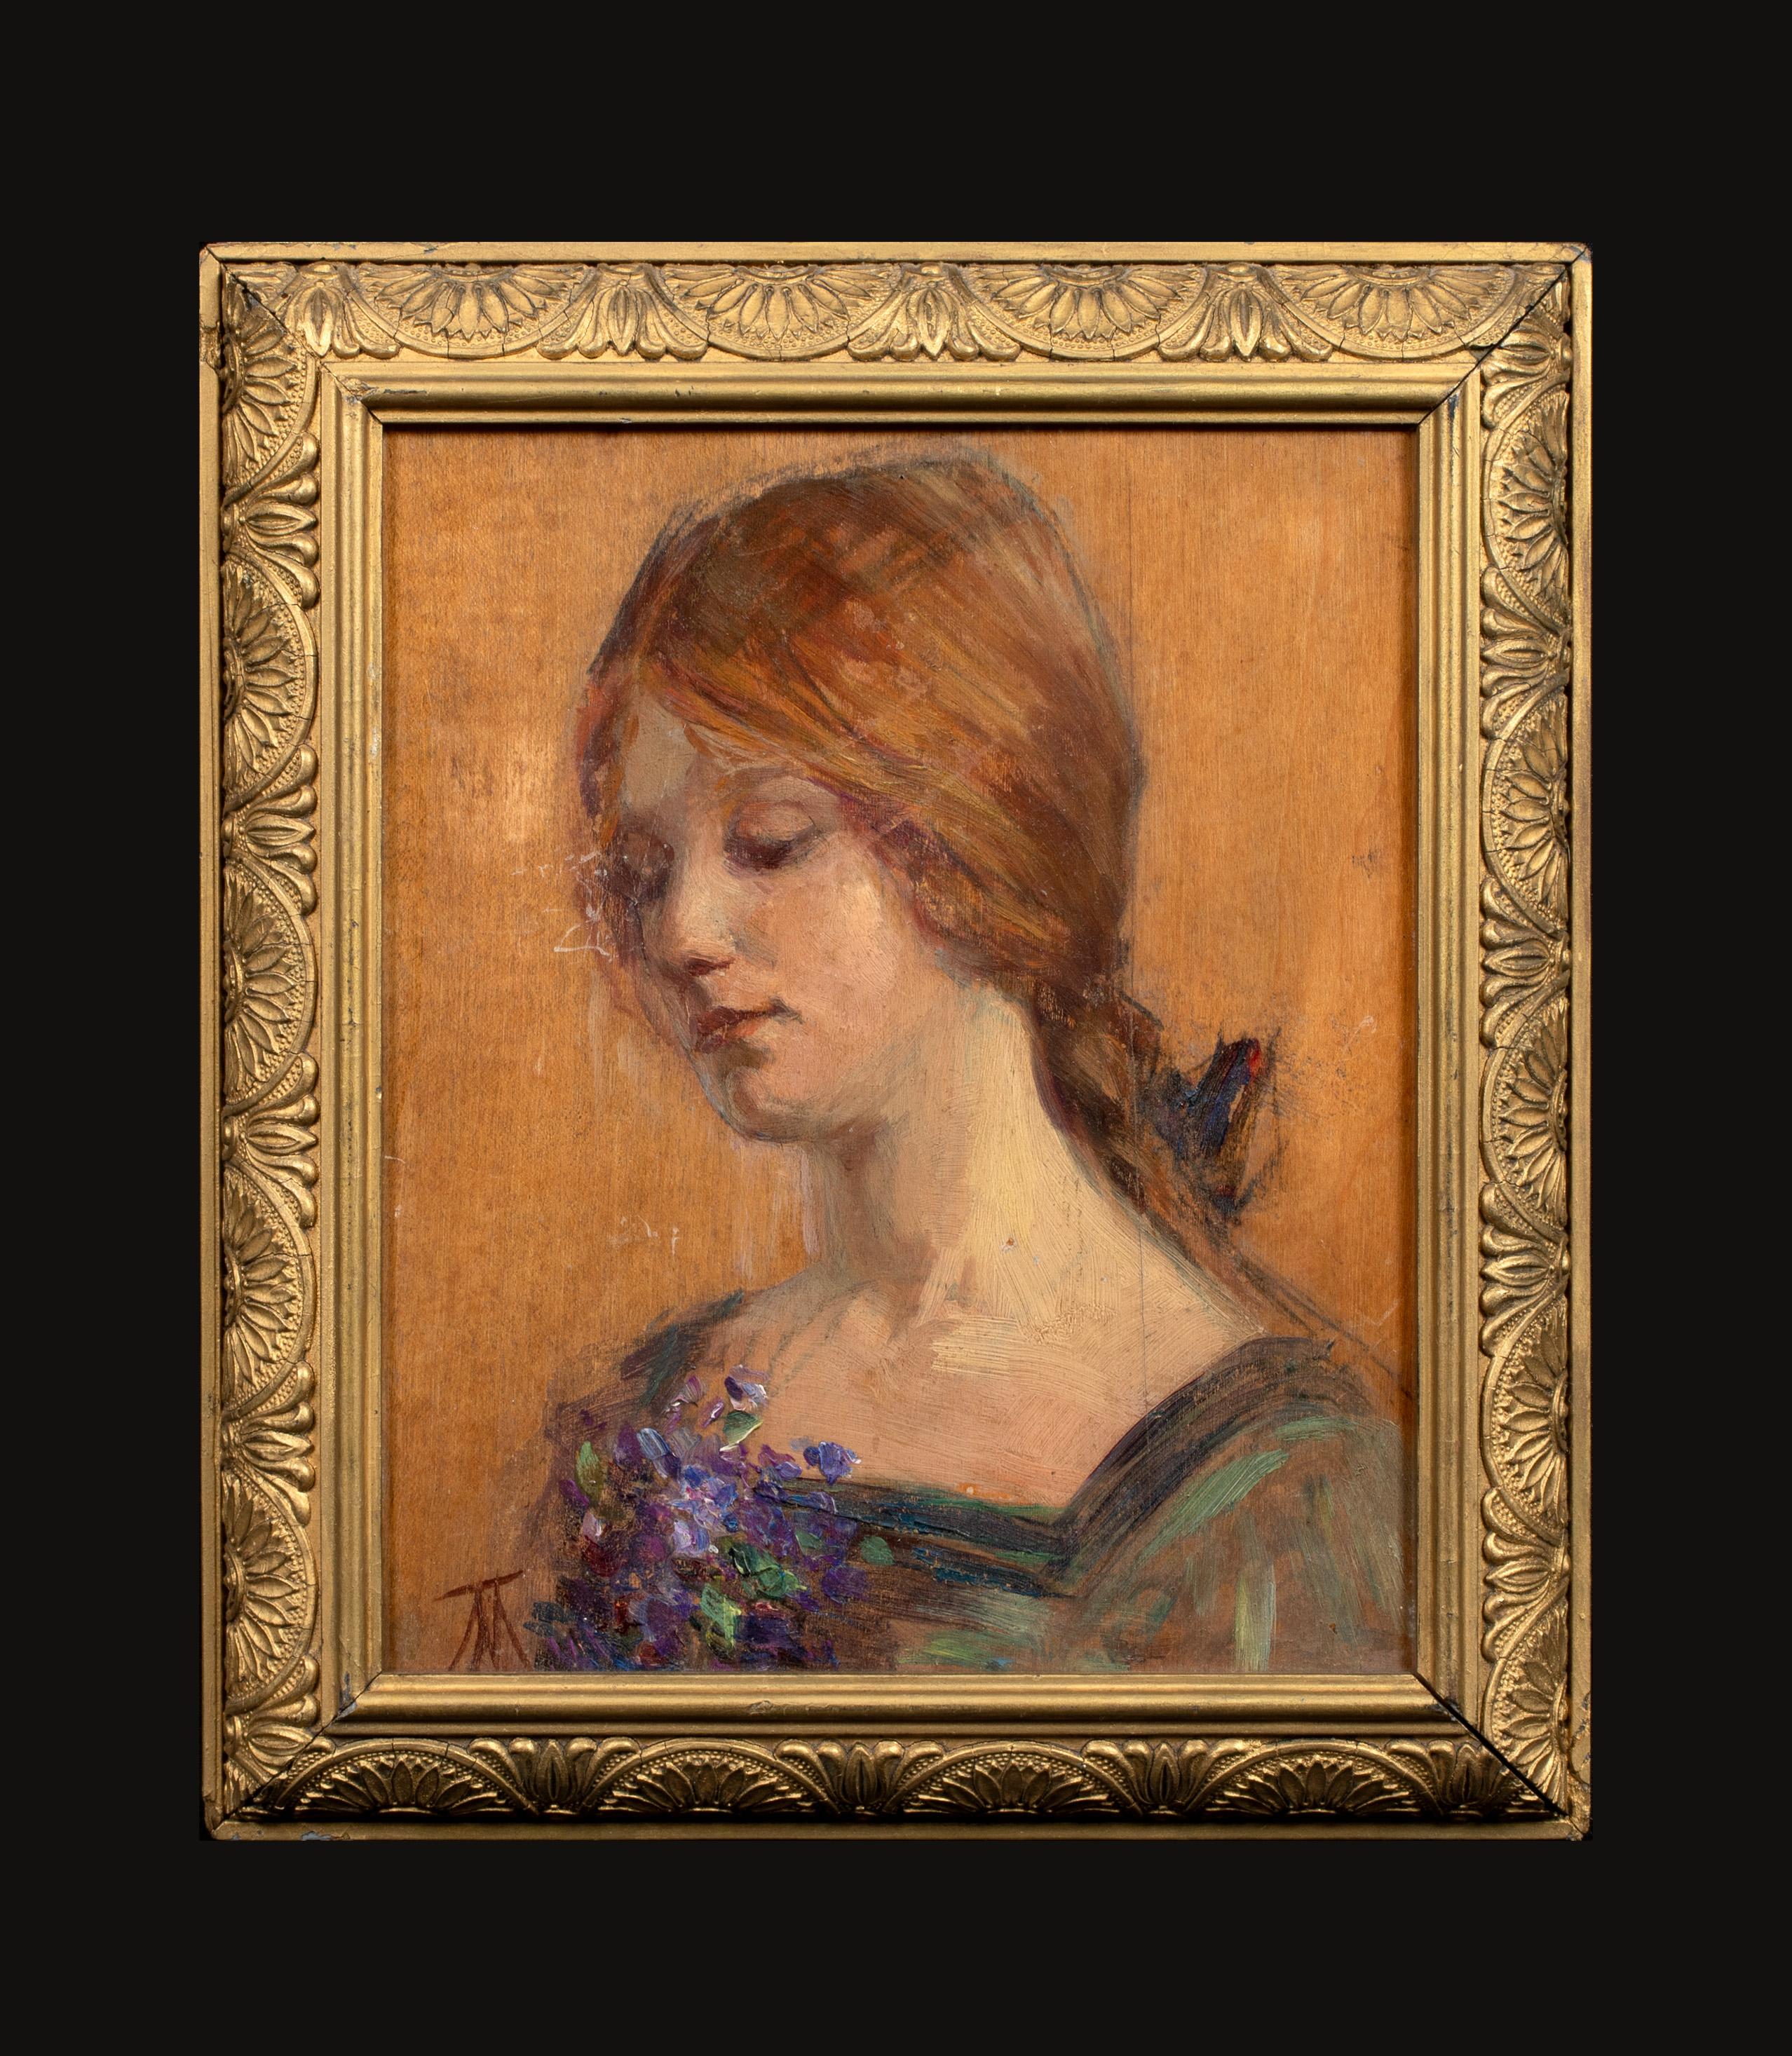 Porträt einer Rothaarigen mit Blumen in der Hand, um 1900 – Painting von Unknown